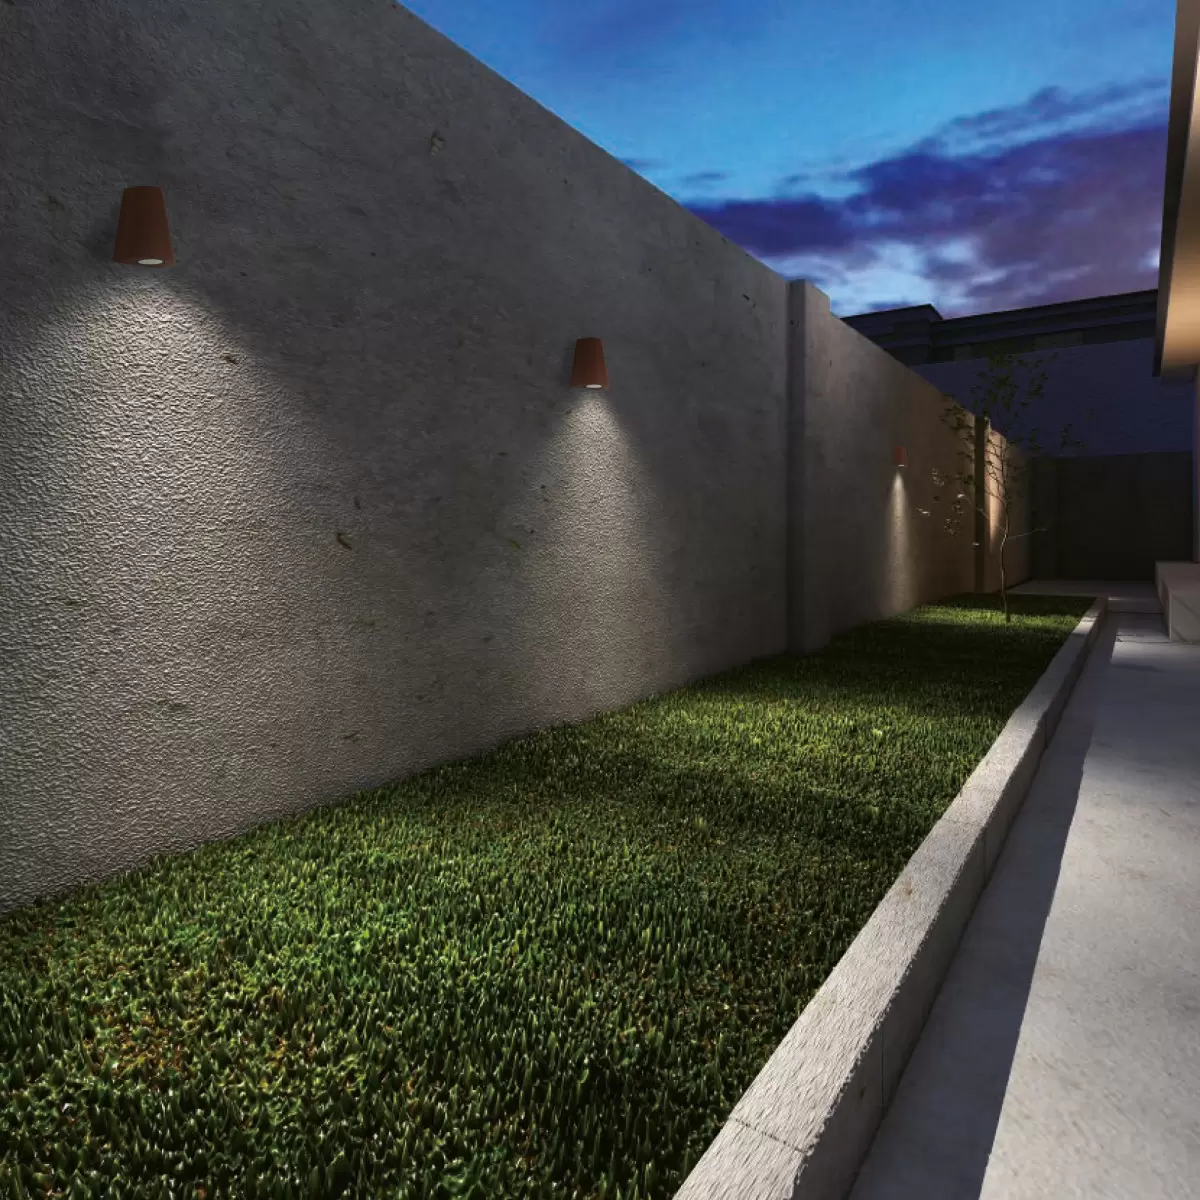 Wandspot Cone buitenlamp roest kleurig - moderne wandverlichting voor buiten| site KS Verlichting